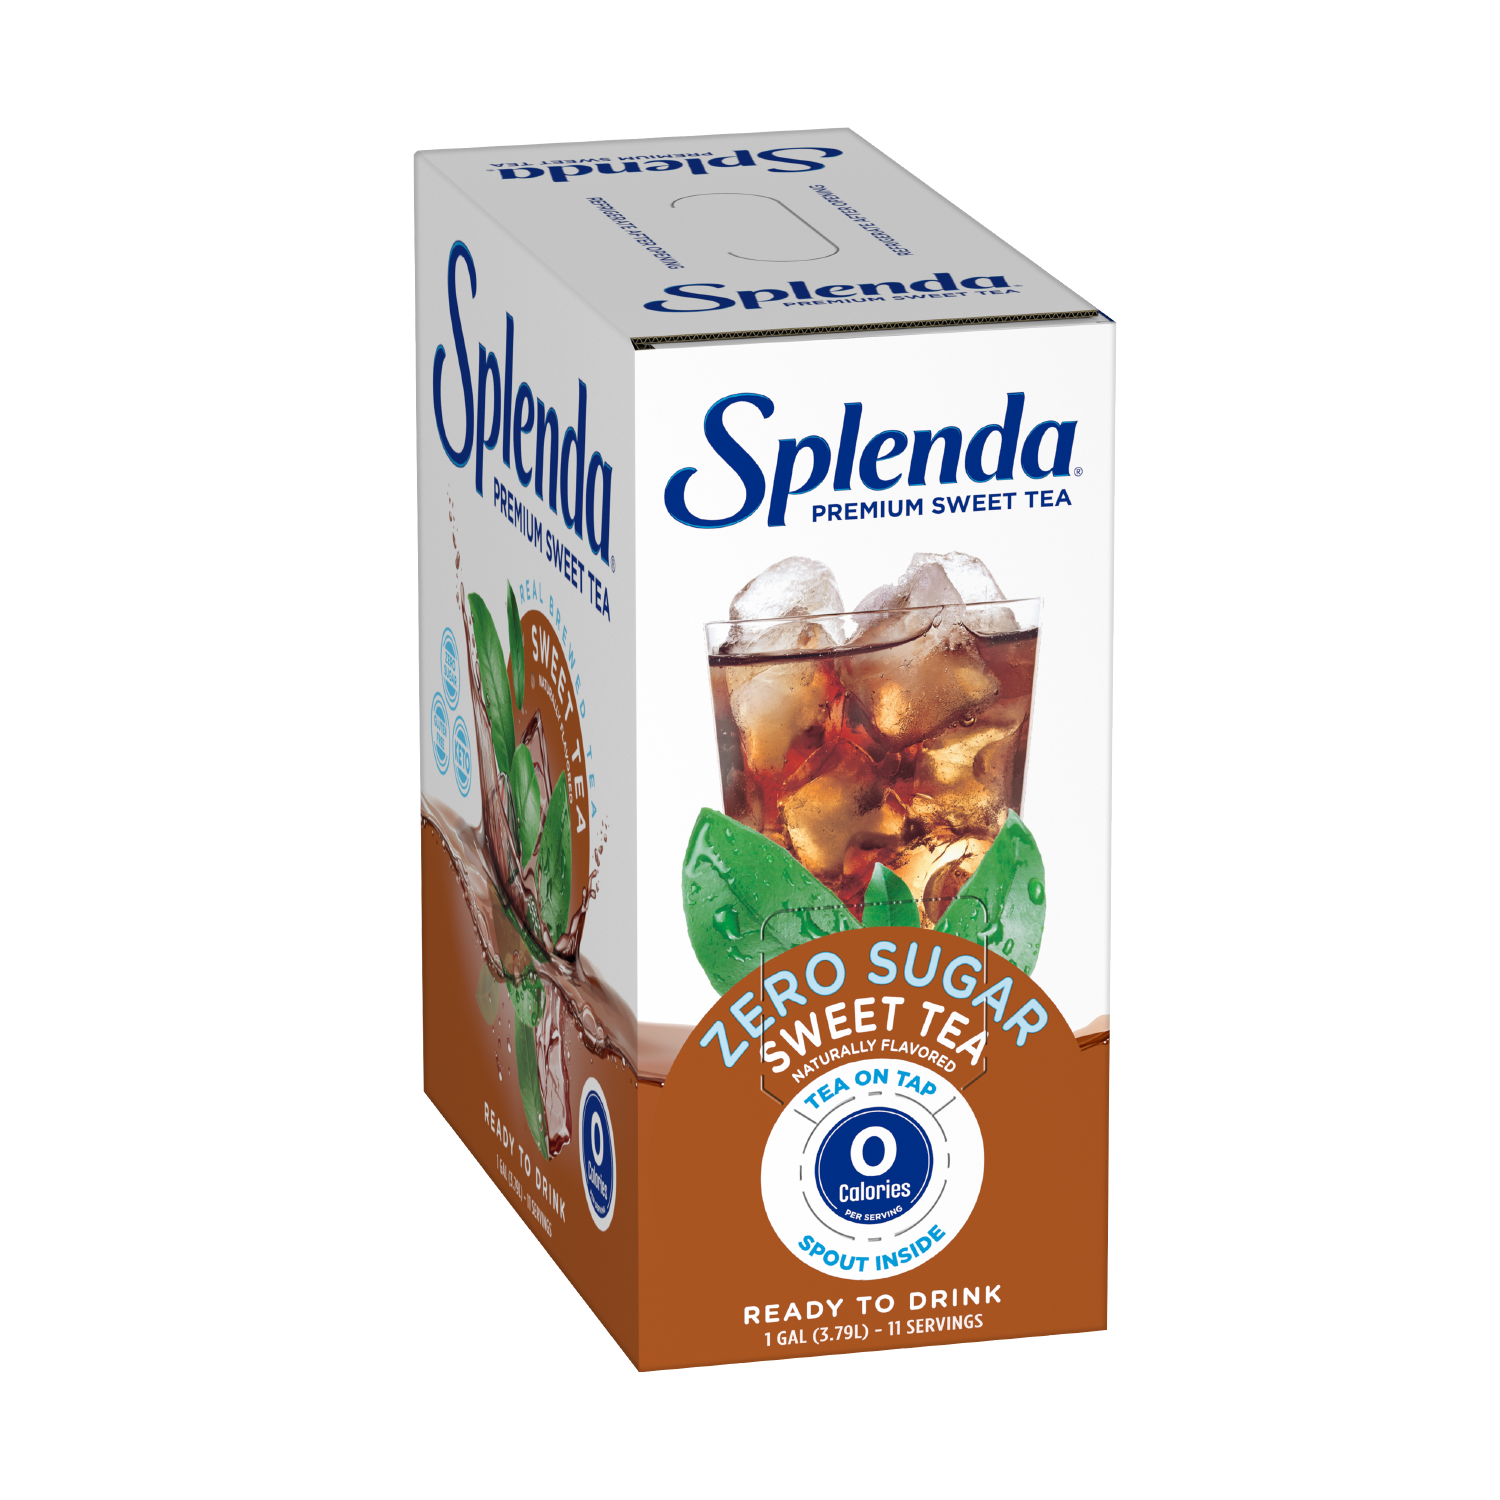 Splenda Sweet Tea - Pour Spout